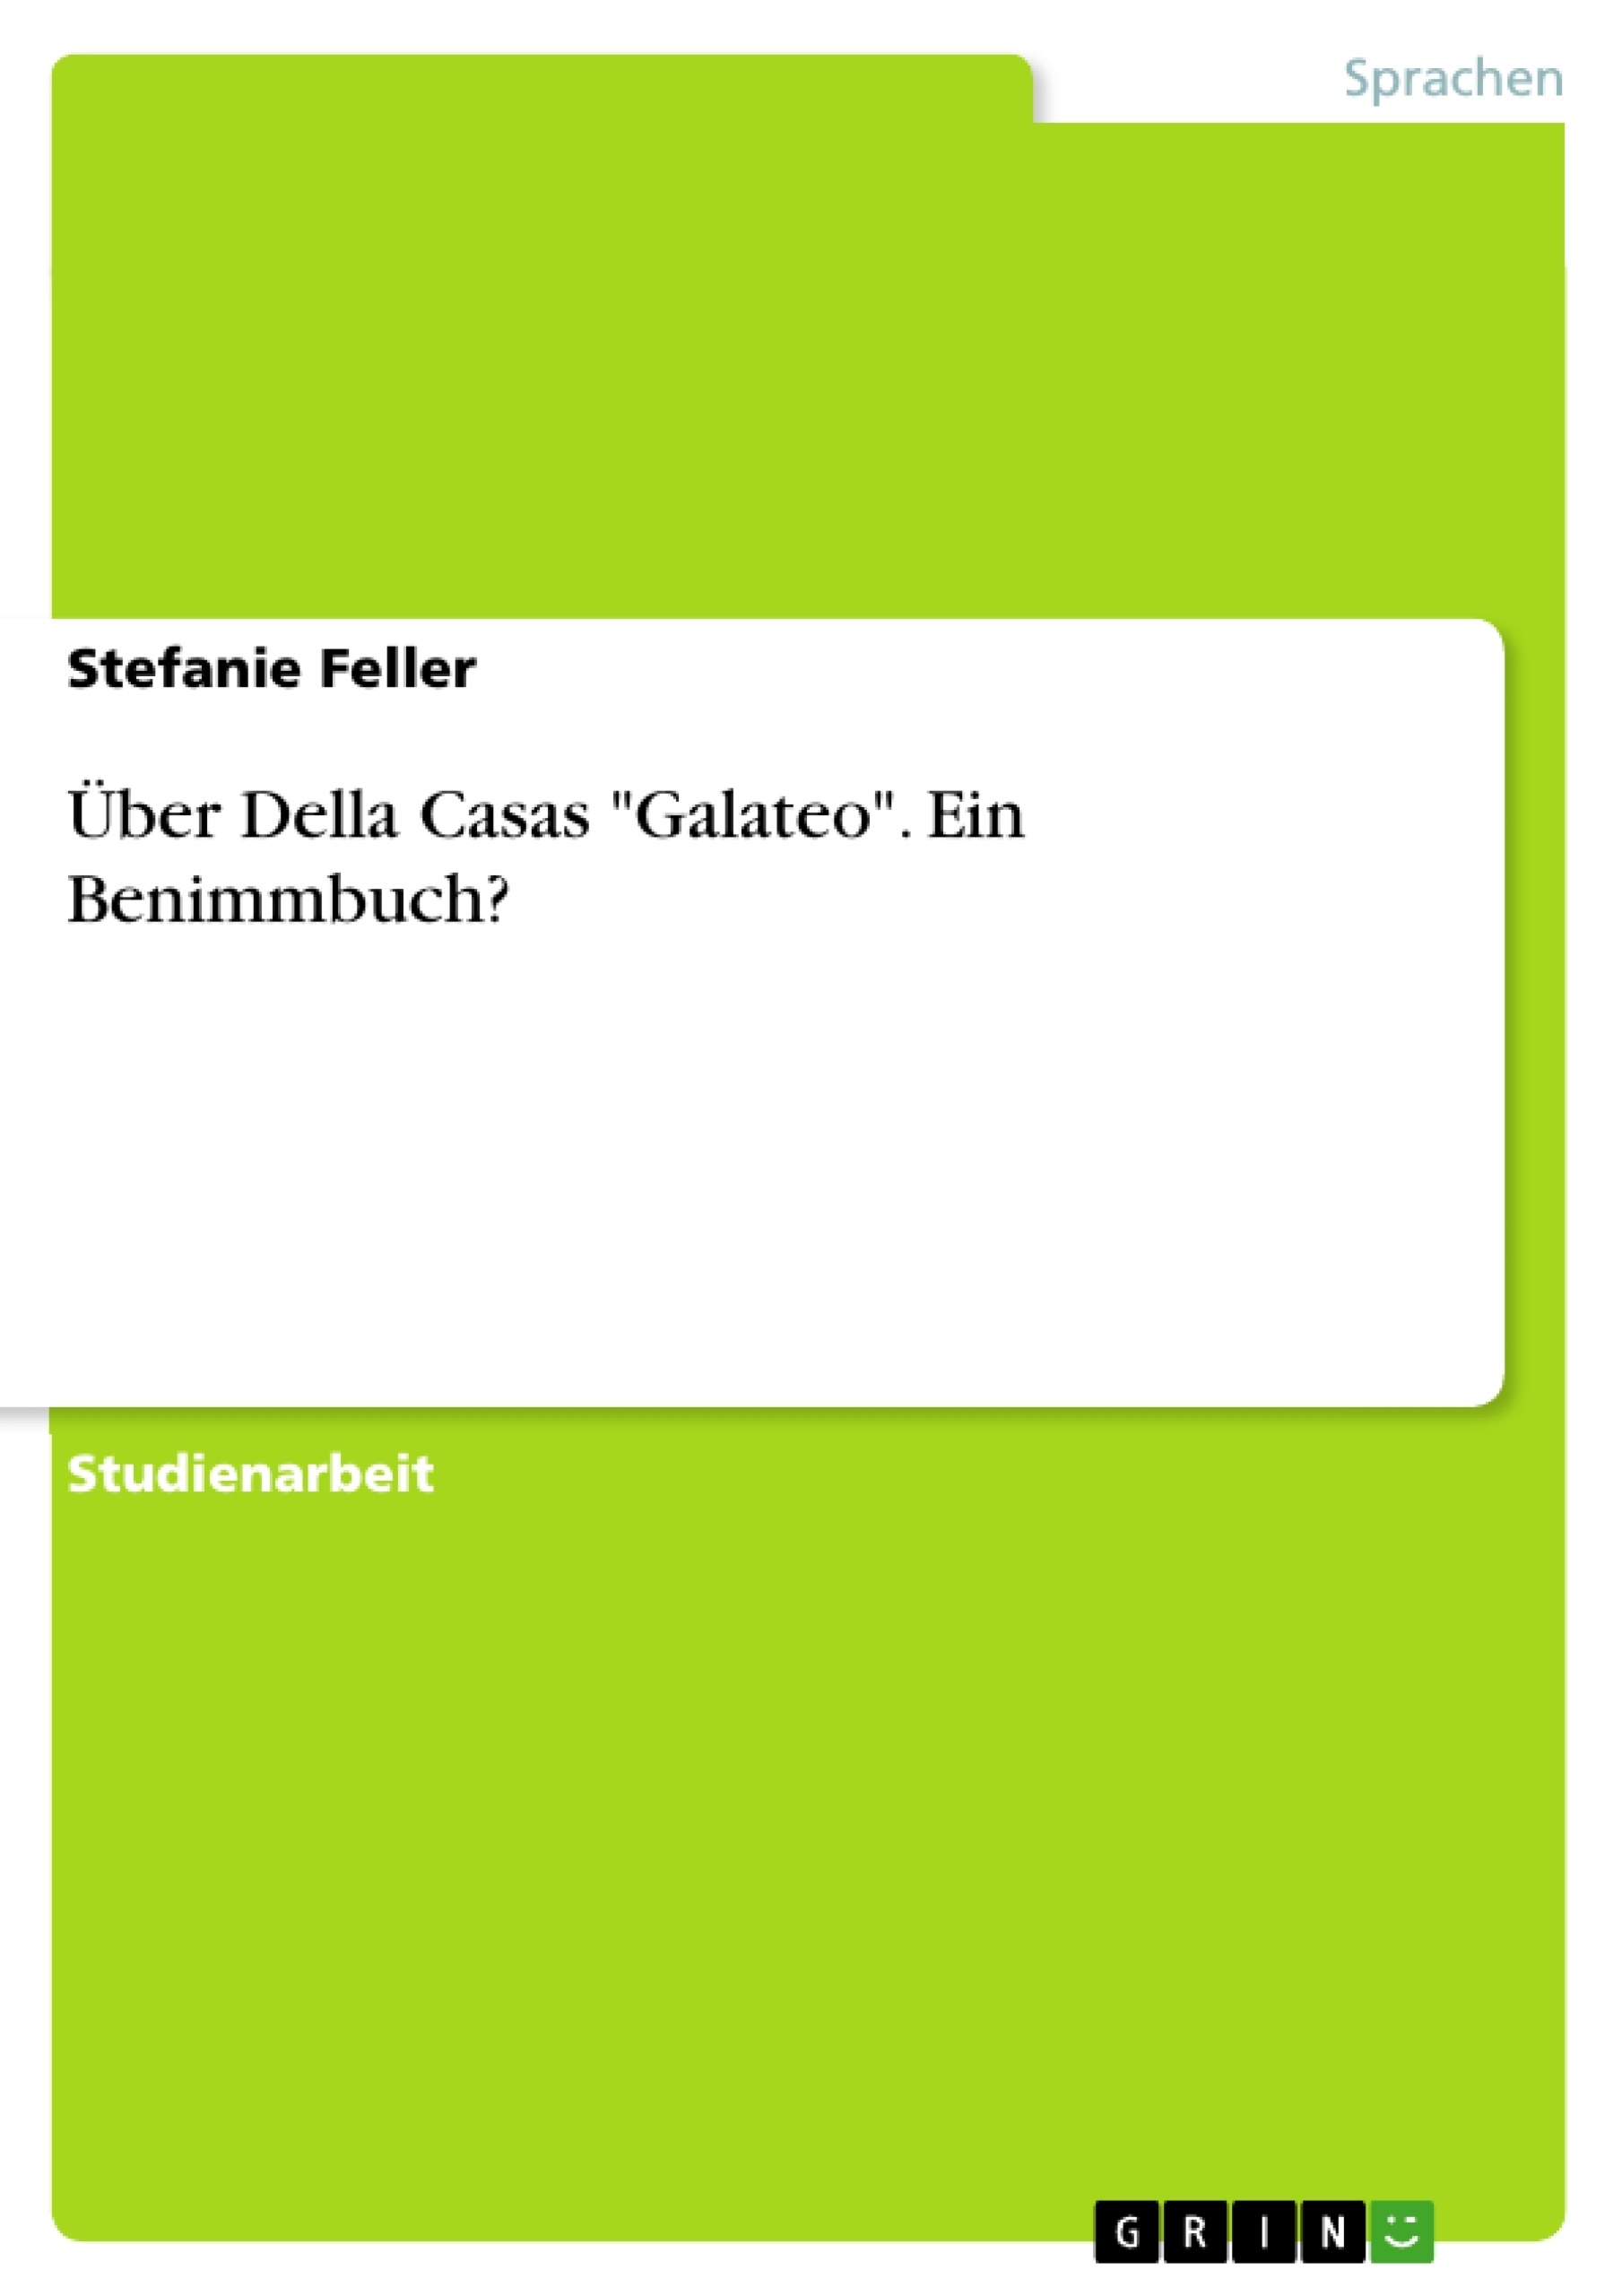 Title: Über Della Casas "Galateo". Ein Benimmbuch?